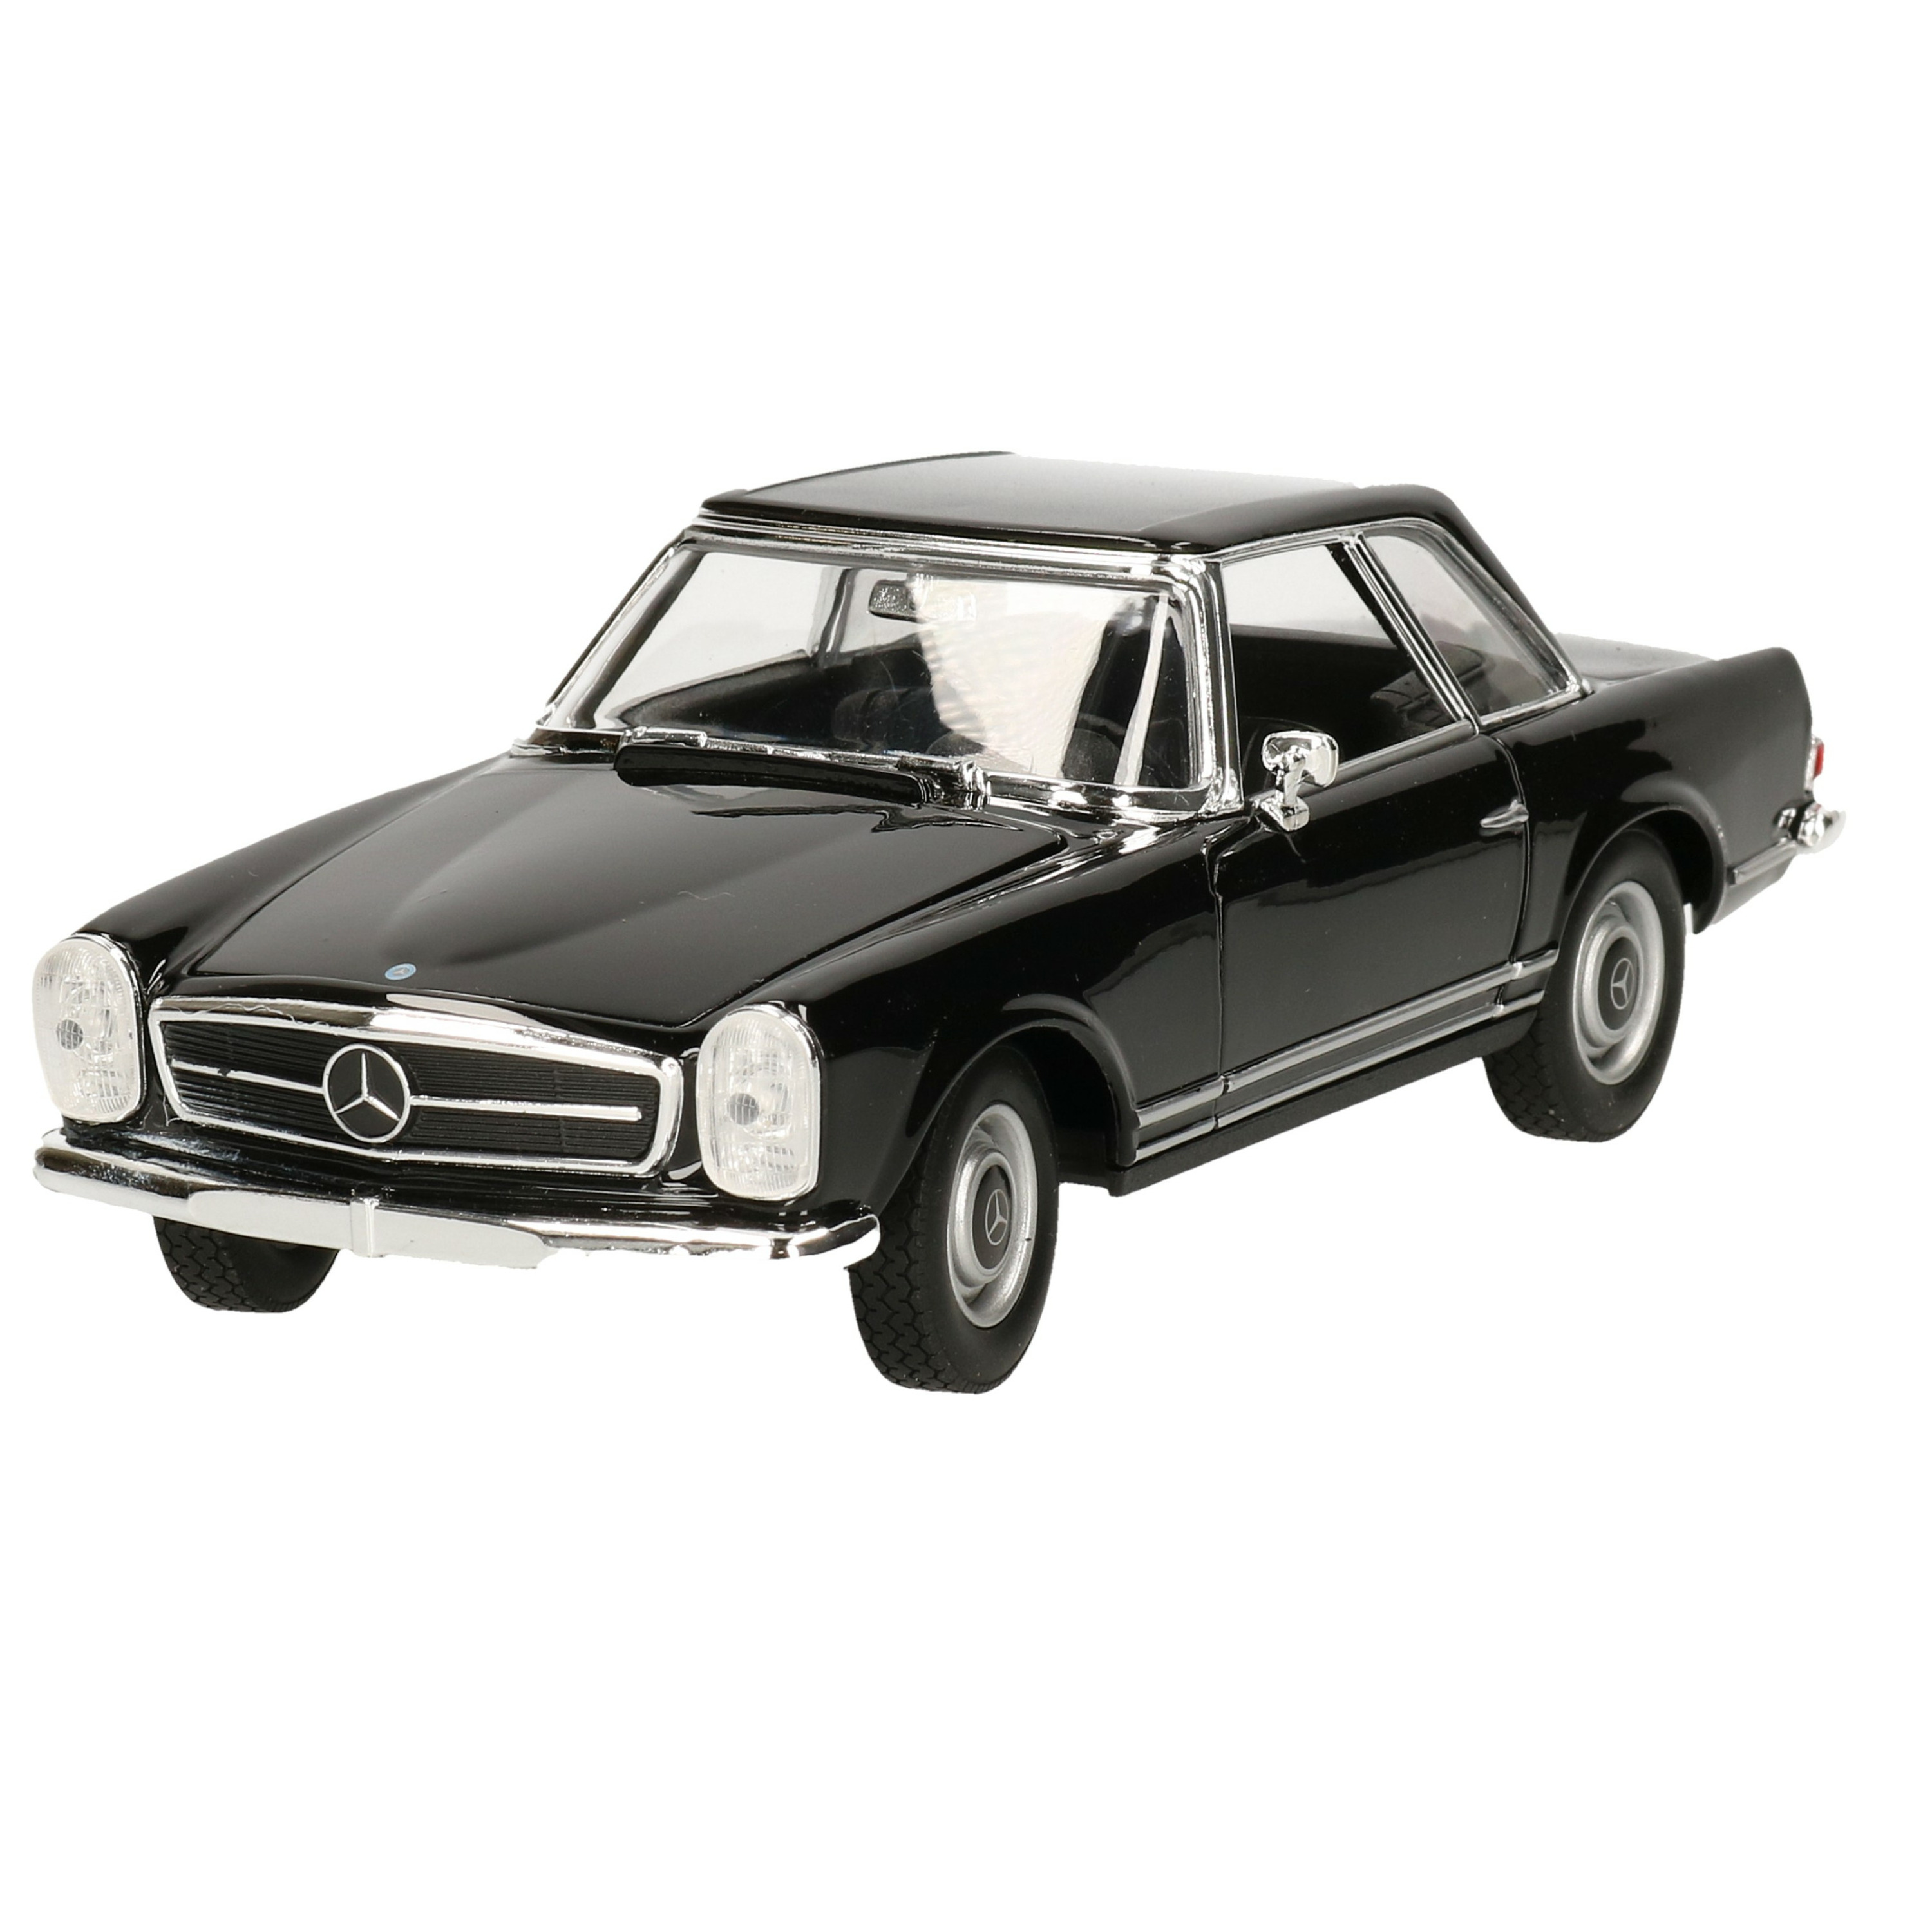 Modelauto/speelgoedauto Mercedes-Benz 230SL 1963 schaal 1:24/18 x 7 x 5 cm